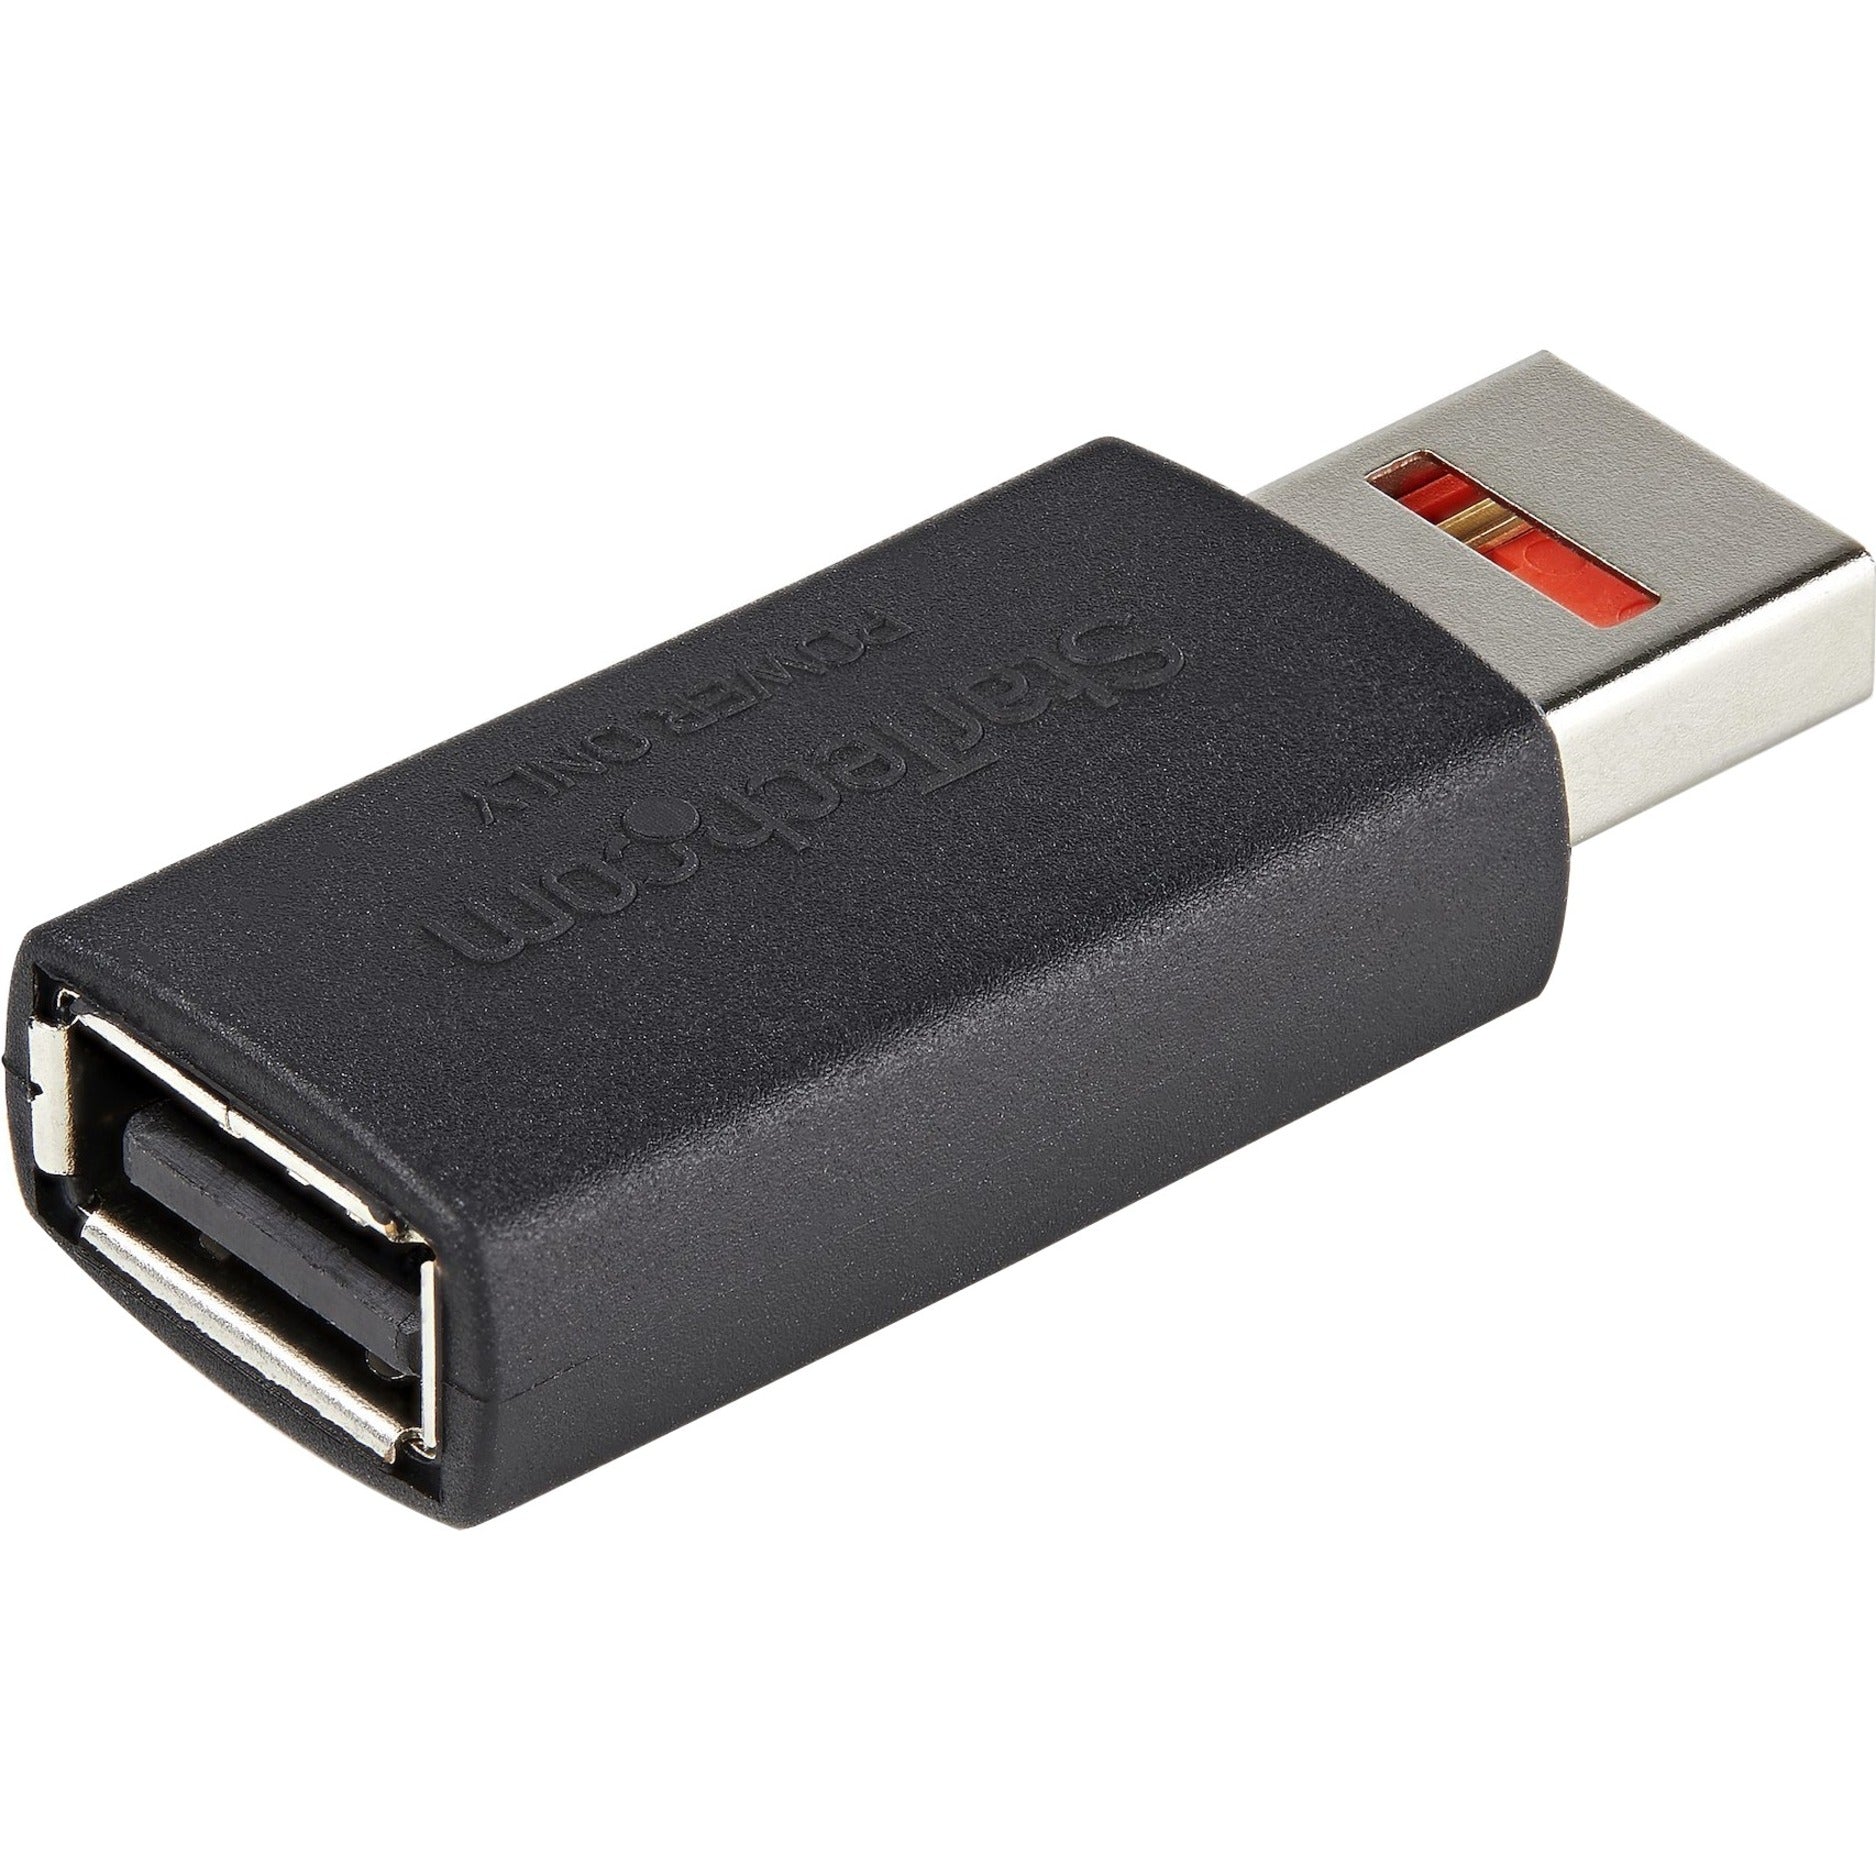 Adaptador de Transferencia de Datos USB StarTech.com Adaptador de Carga/Alimentación Solo para Teléfono/Tableta con Bloqueo de Datos USB-A Macho/Hembra.